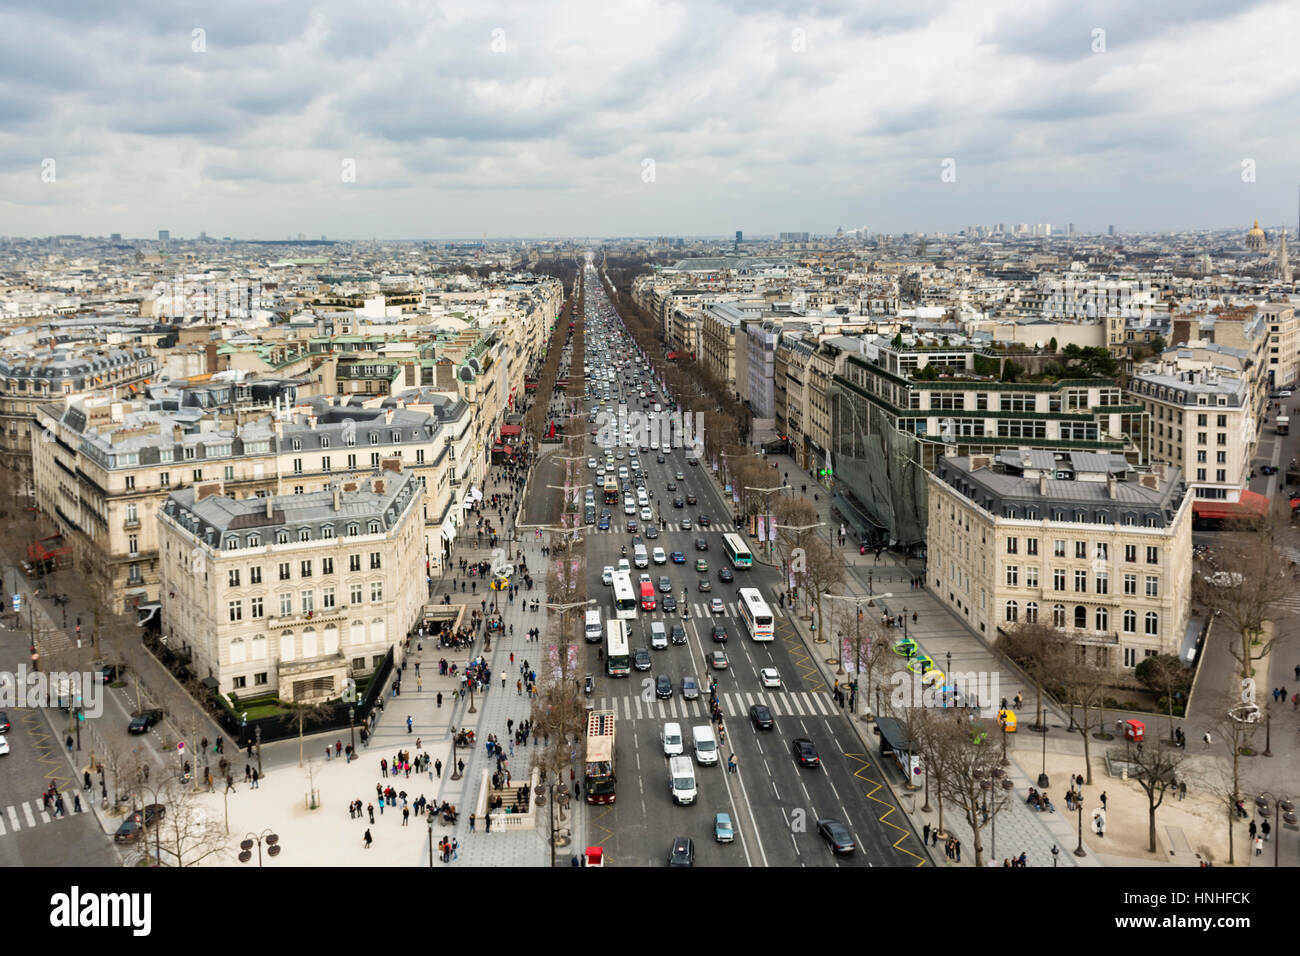 Vue aérienne de Paris avec des bâtiments de style haussmannien et les toits, de l'Arc de Triomphe. Paris, France. Banque D'Images